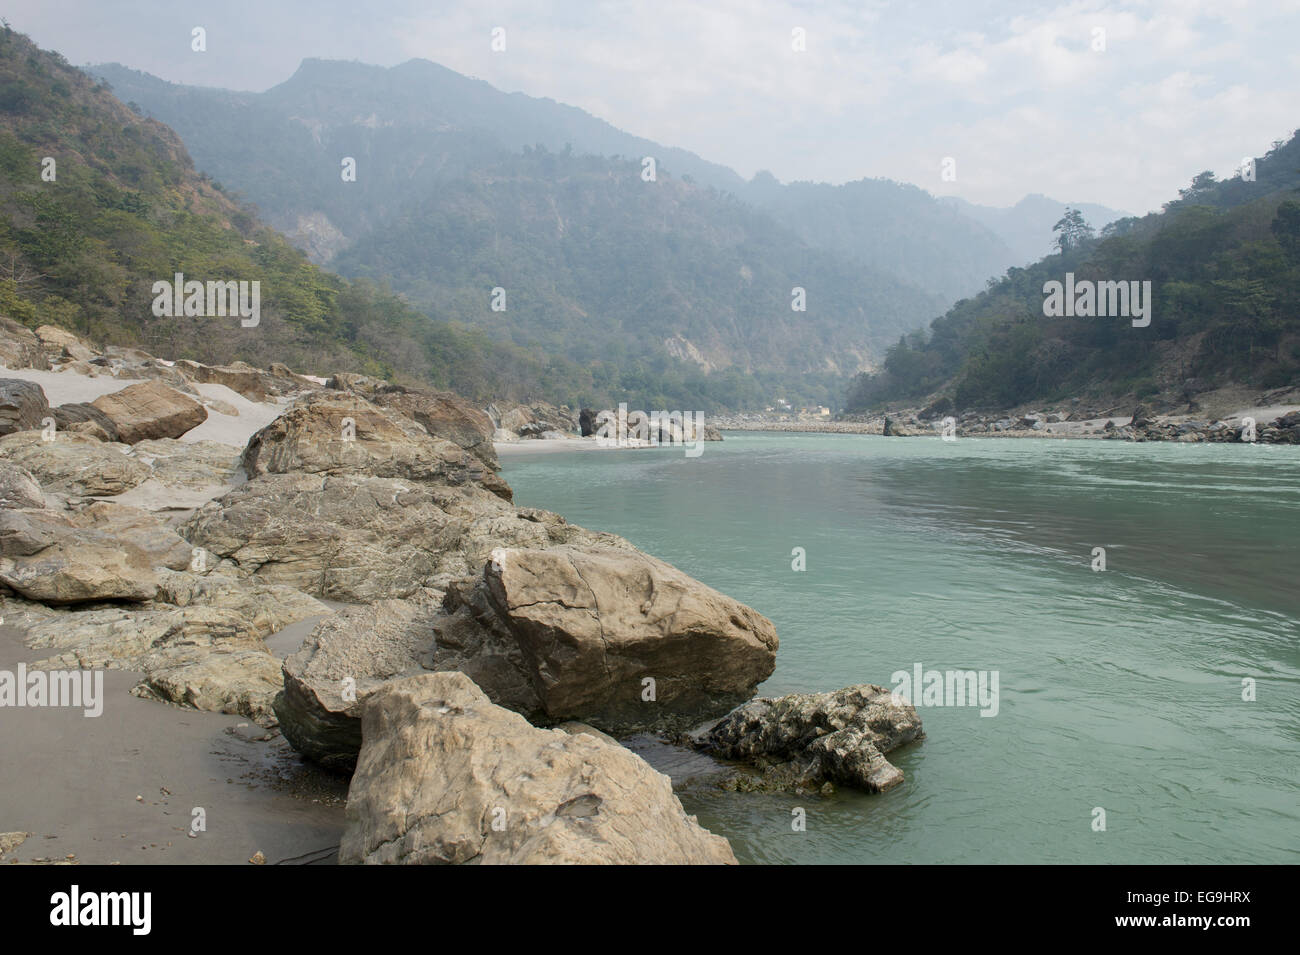 Der Ganges oder Ganga Fluss in den Ausläufern des Himalaya, oberhalb von Rishikesh in Uttarakhand, Nordost-Indien. Stockfoto